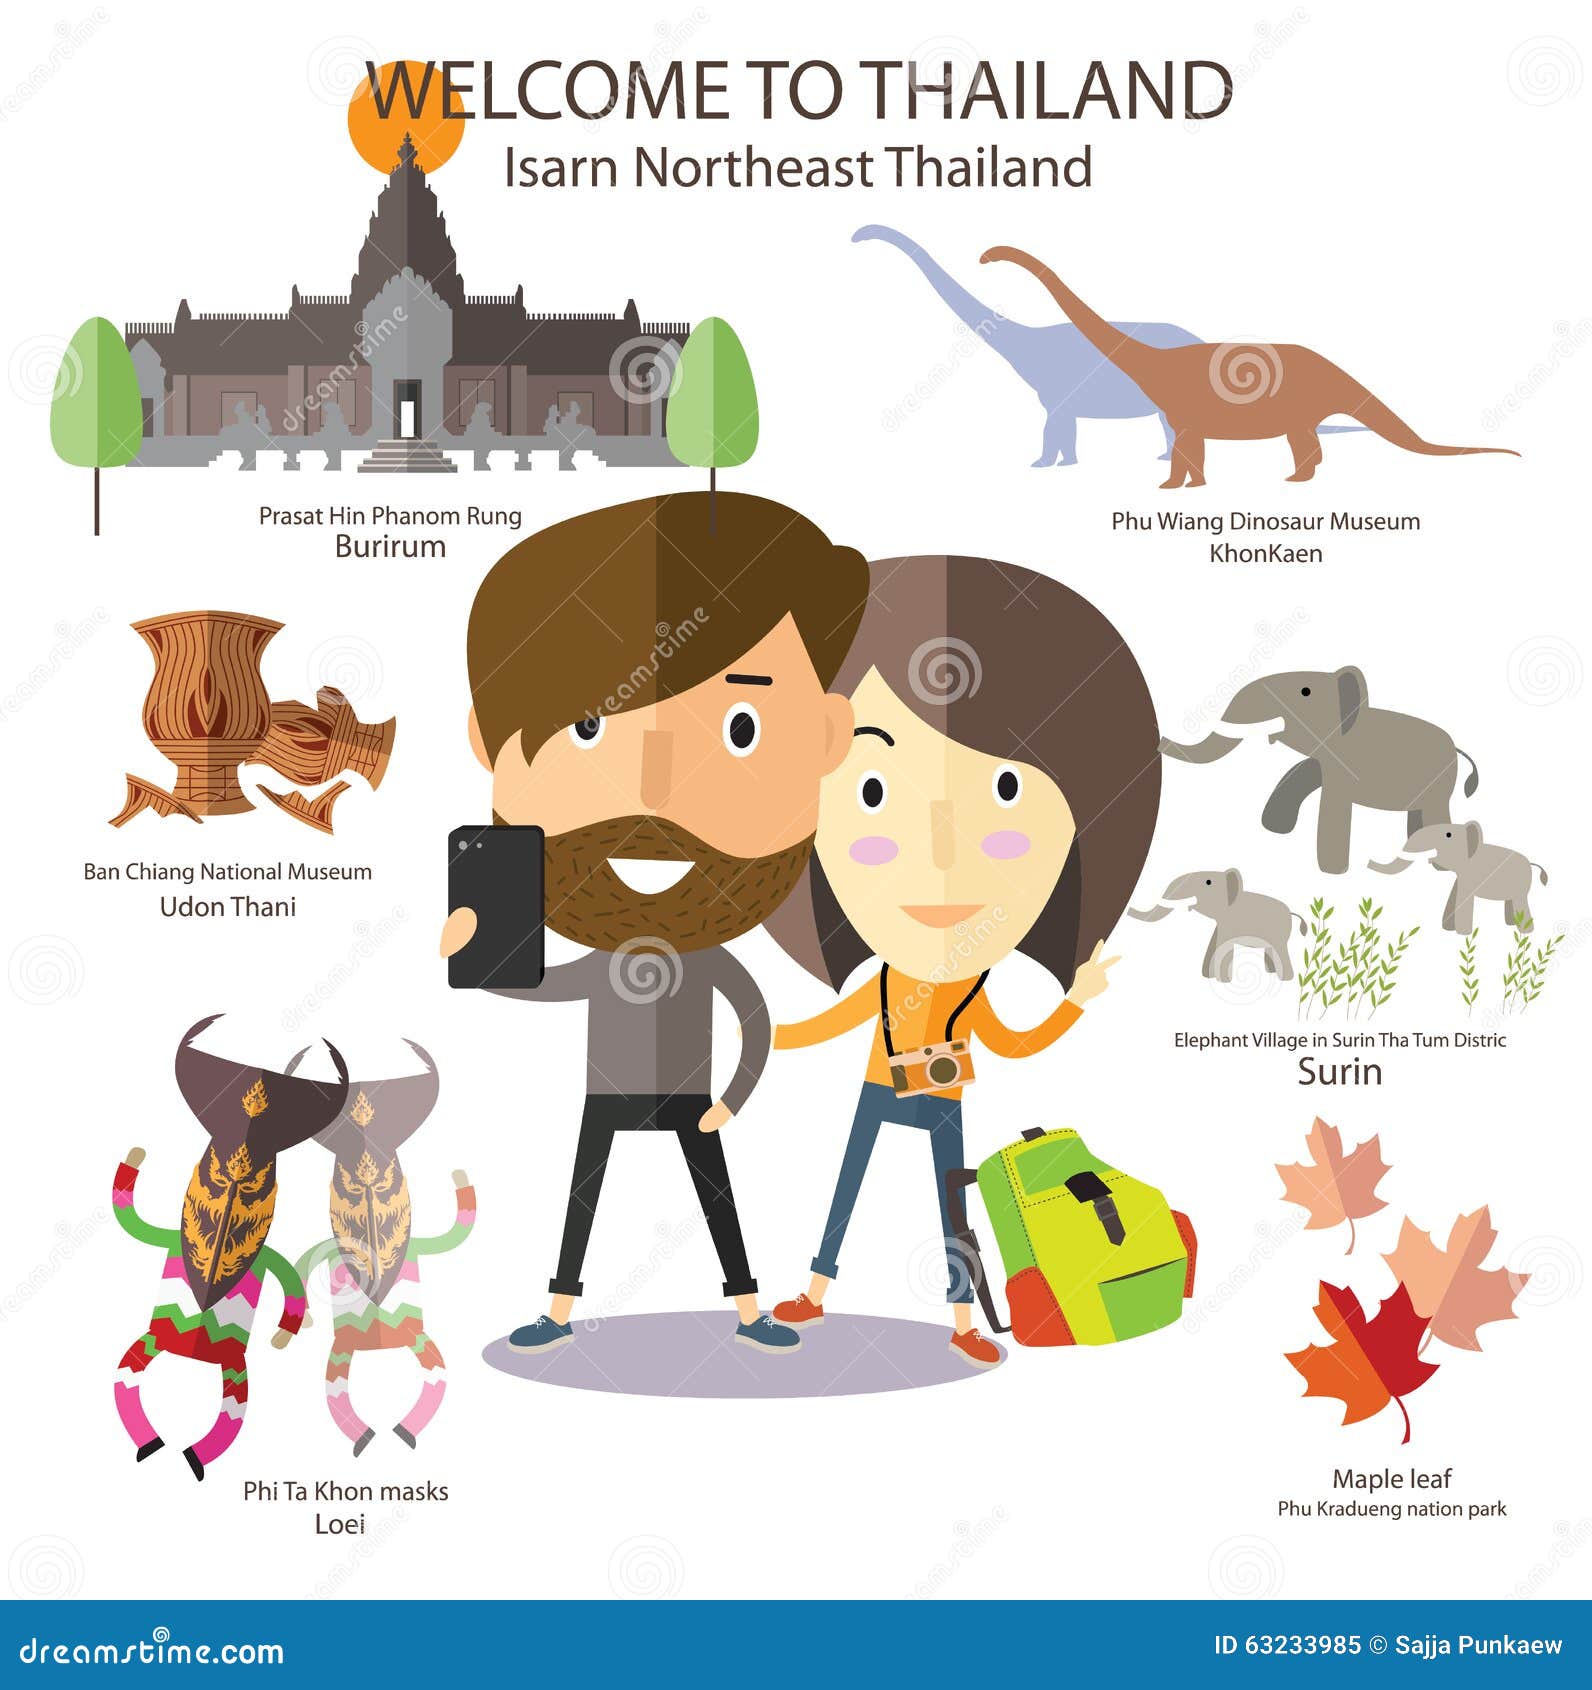 tourist travel to isarn northeast thailand